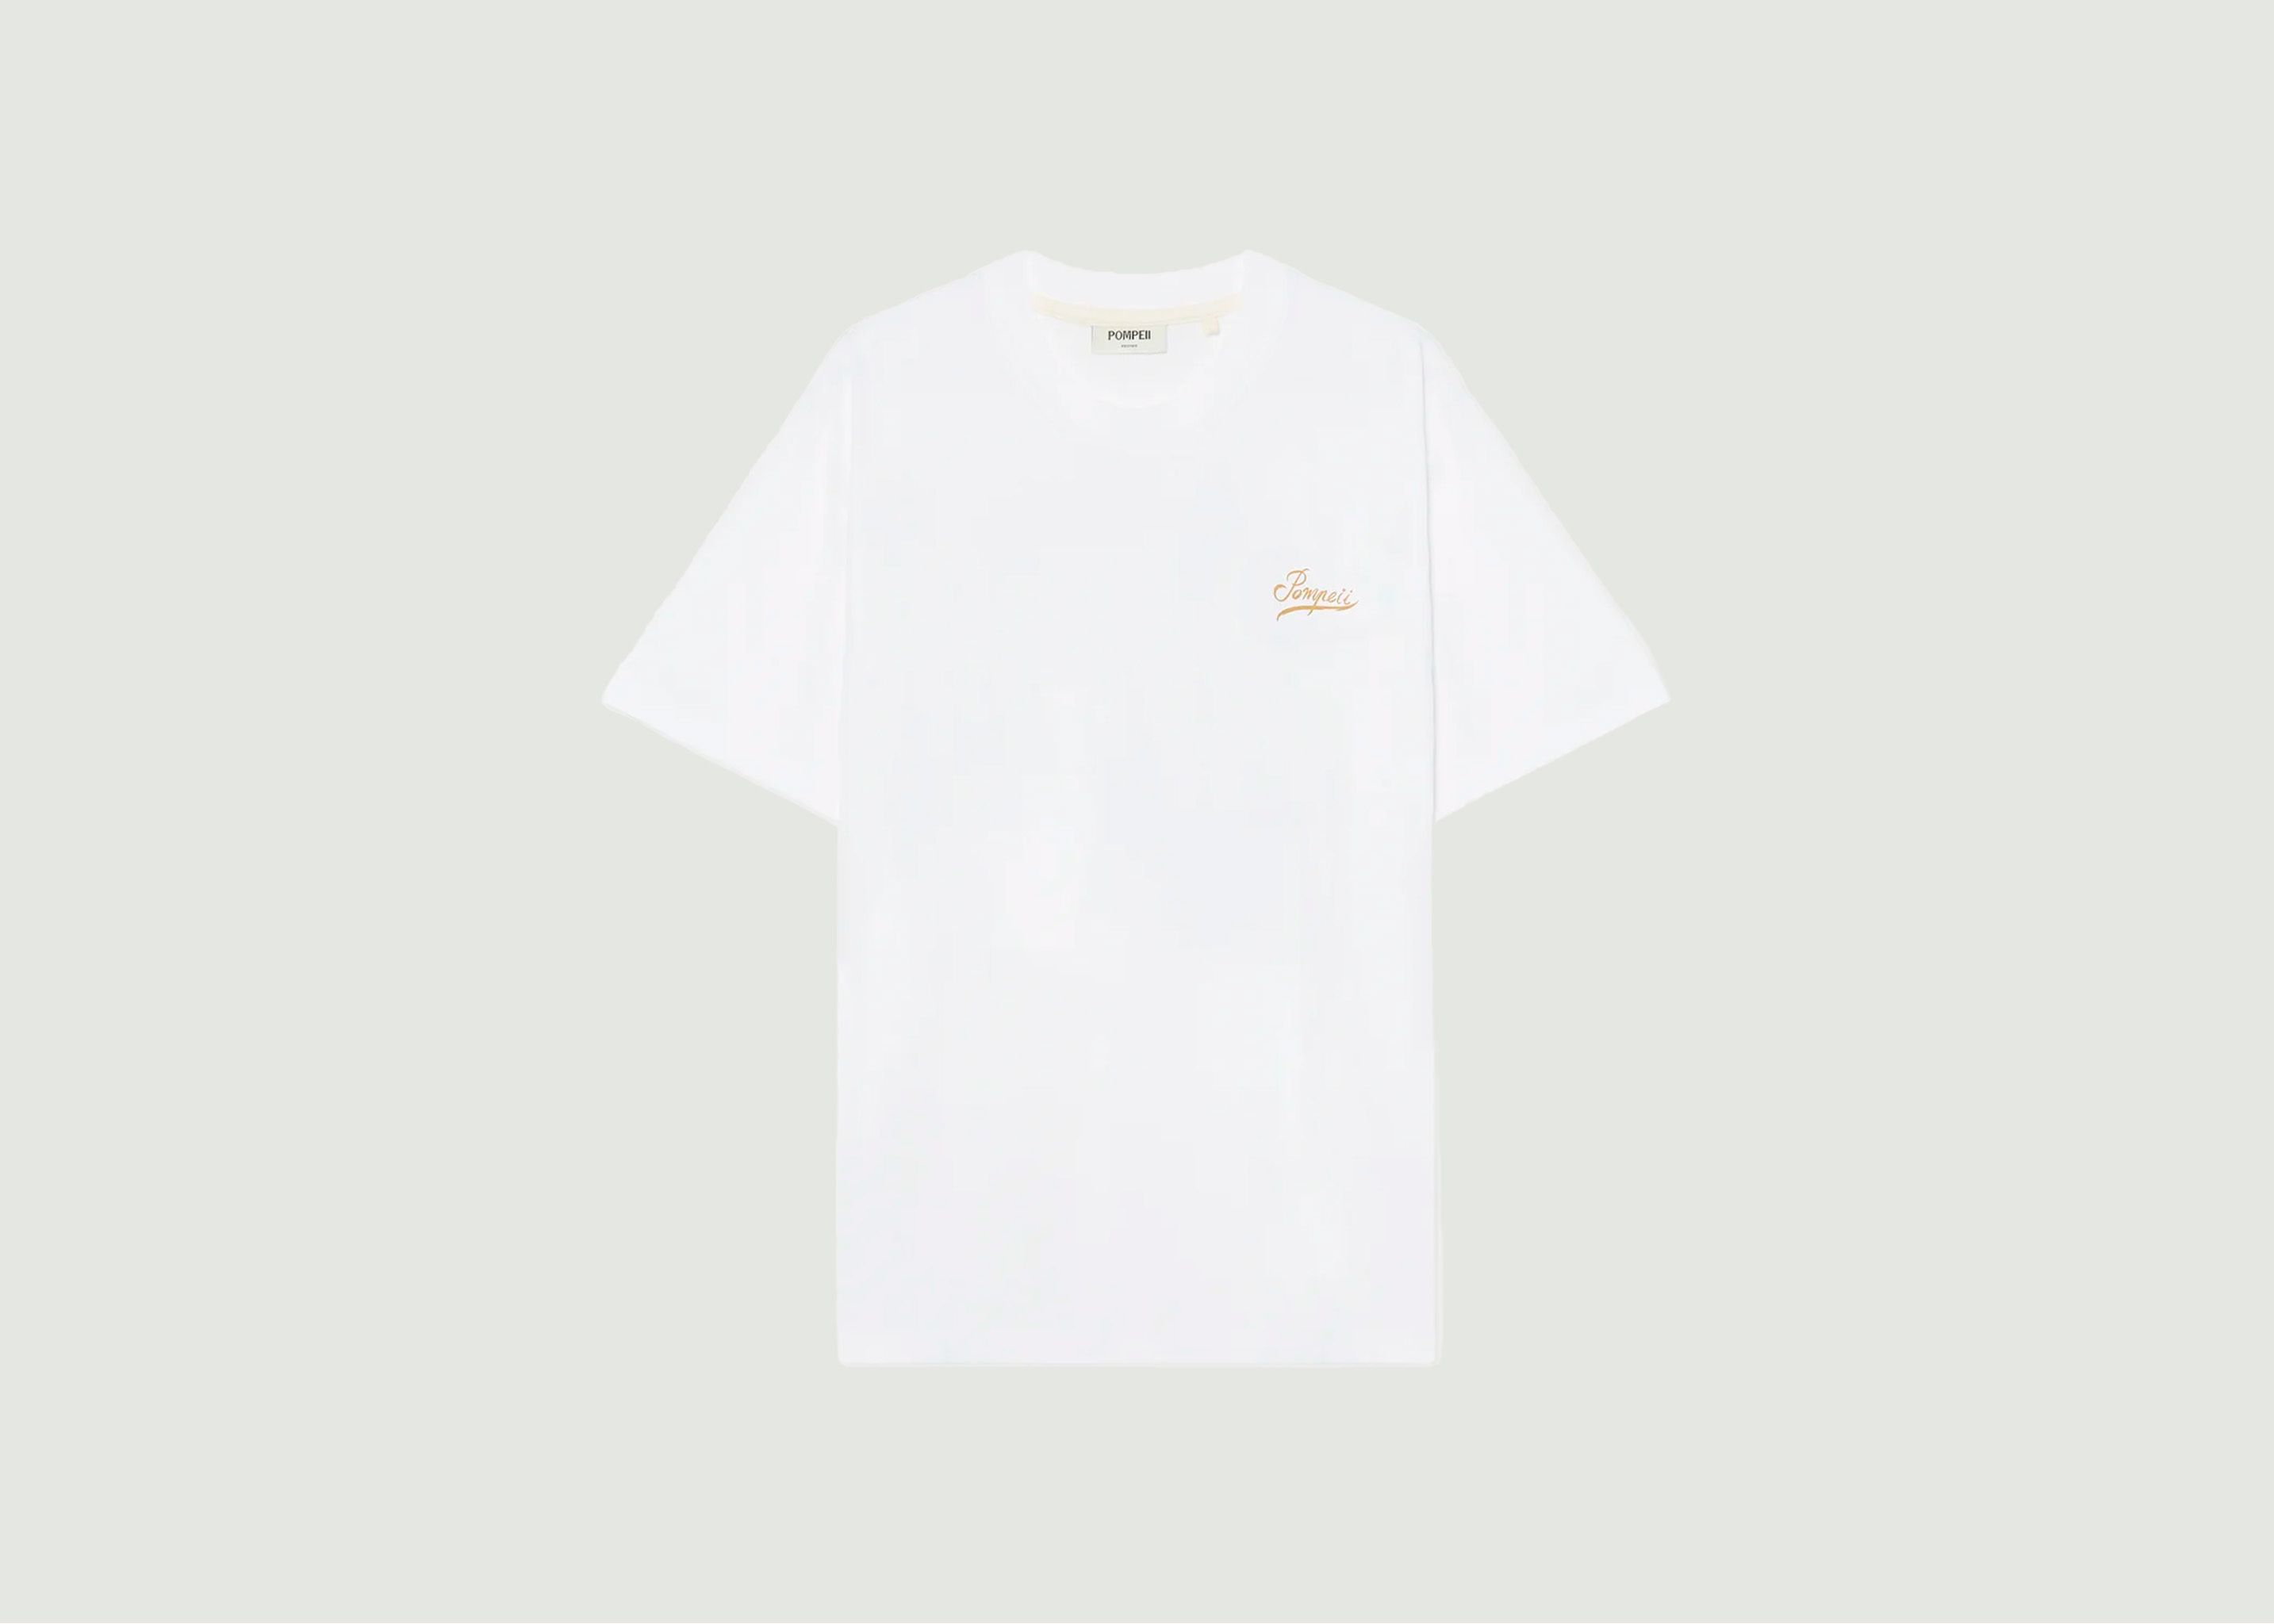 Small Talk T-shirt - Pompeii Brand